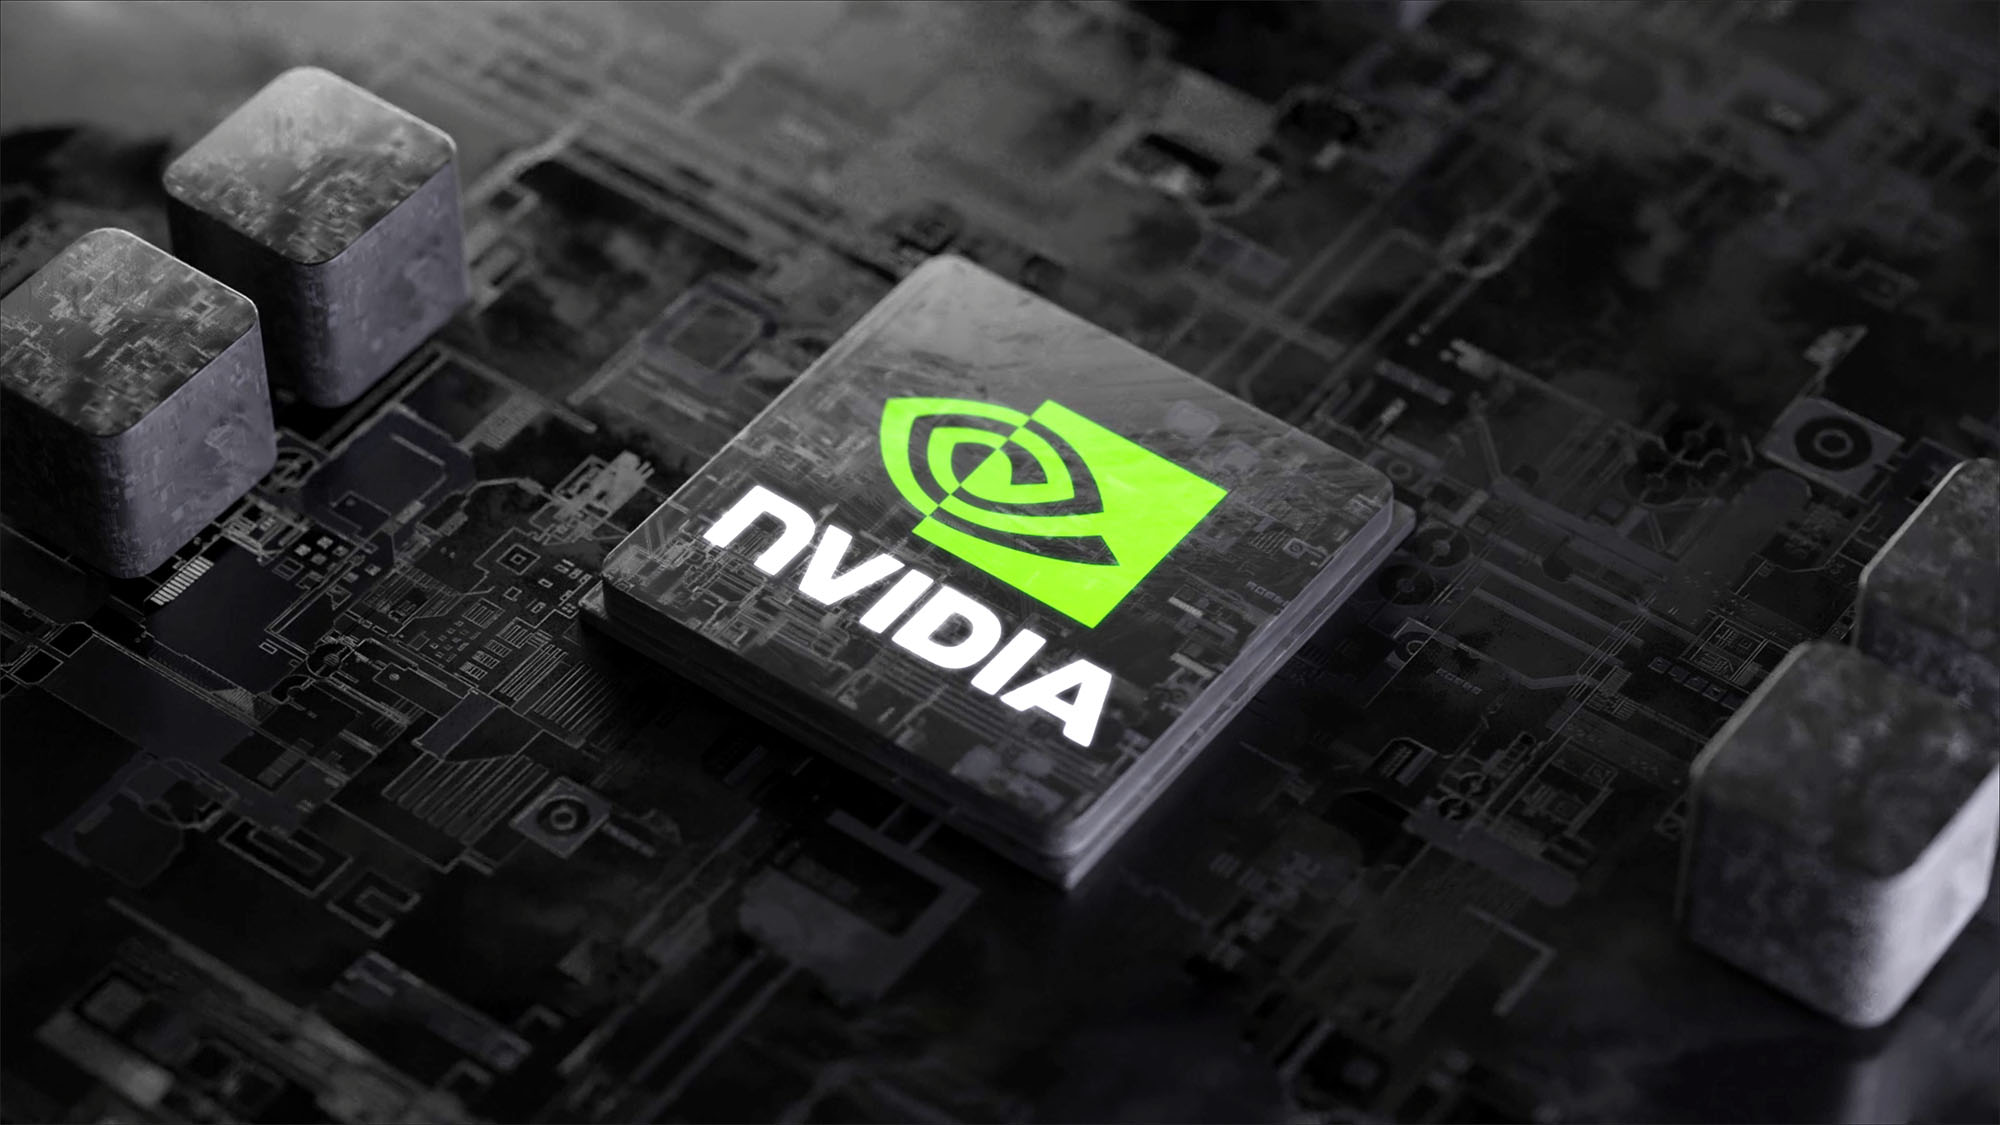 Trung Quốc tiếp tục mua được chip Nvidia cao cấp bất chấp lệnh cấm của Mỹ